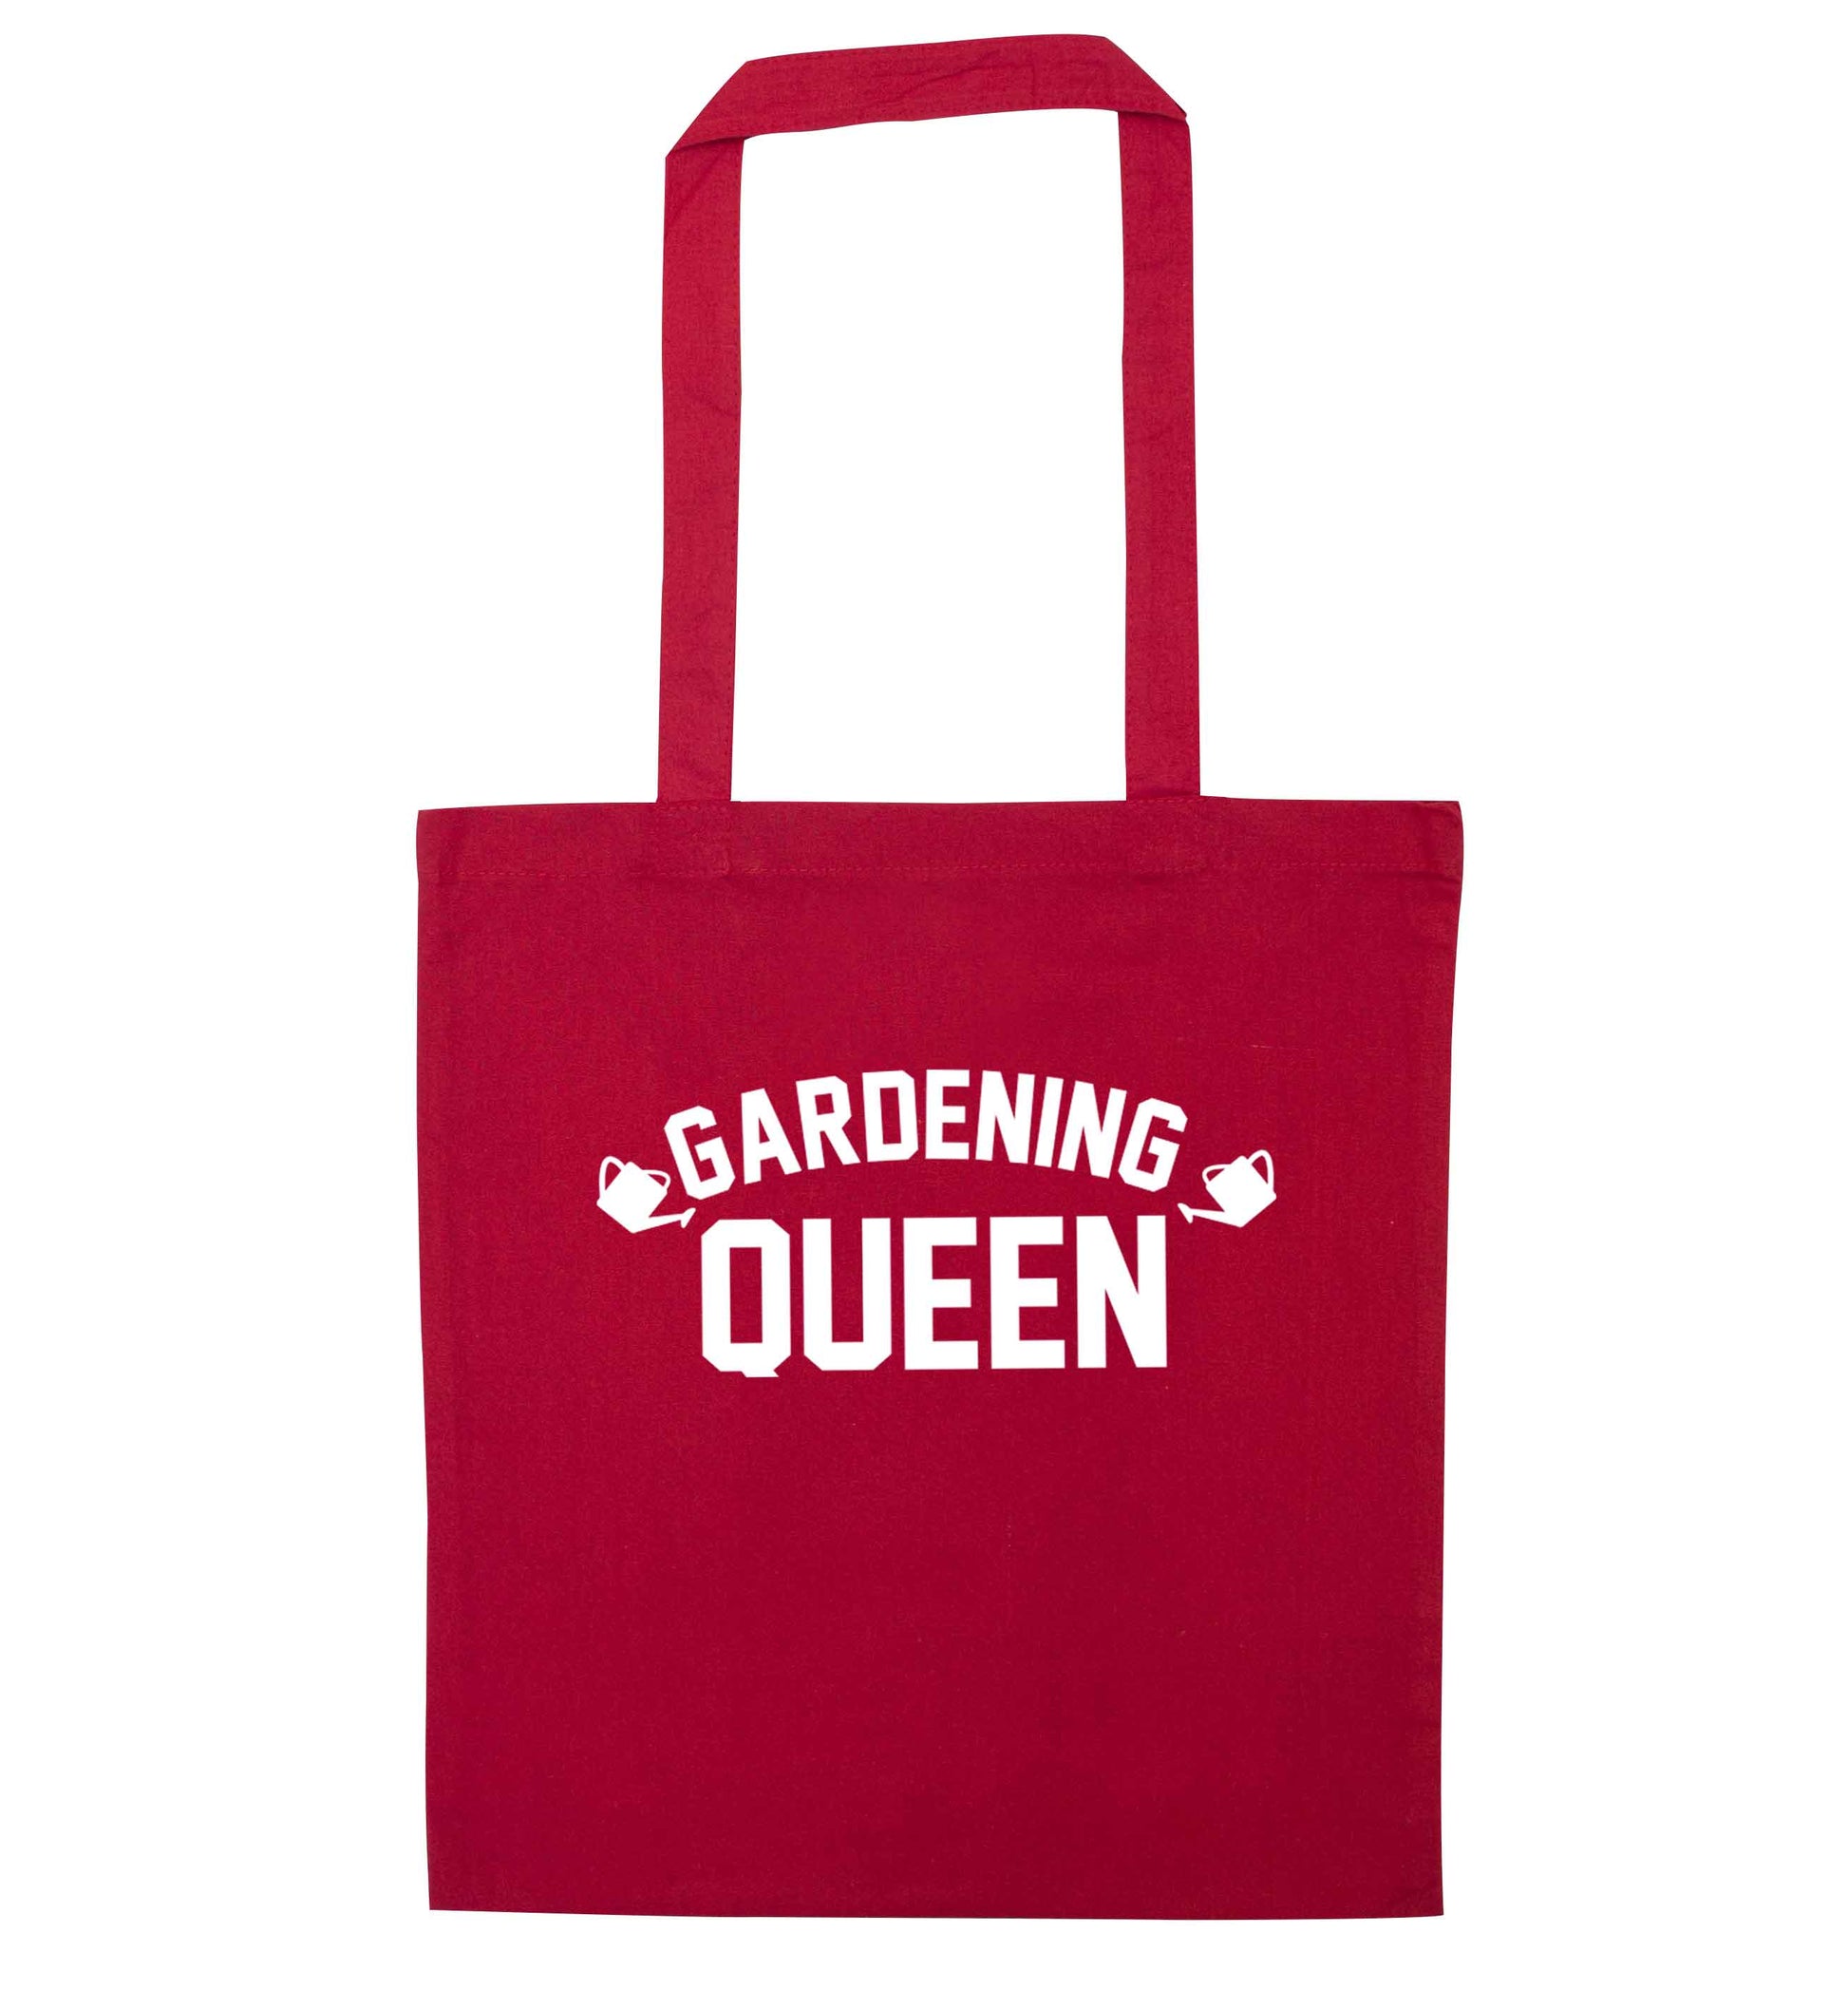 Gardening queen red tote bag